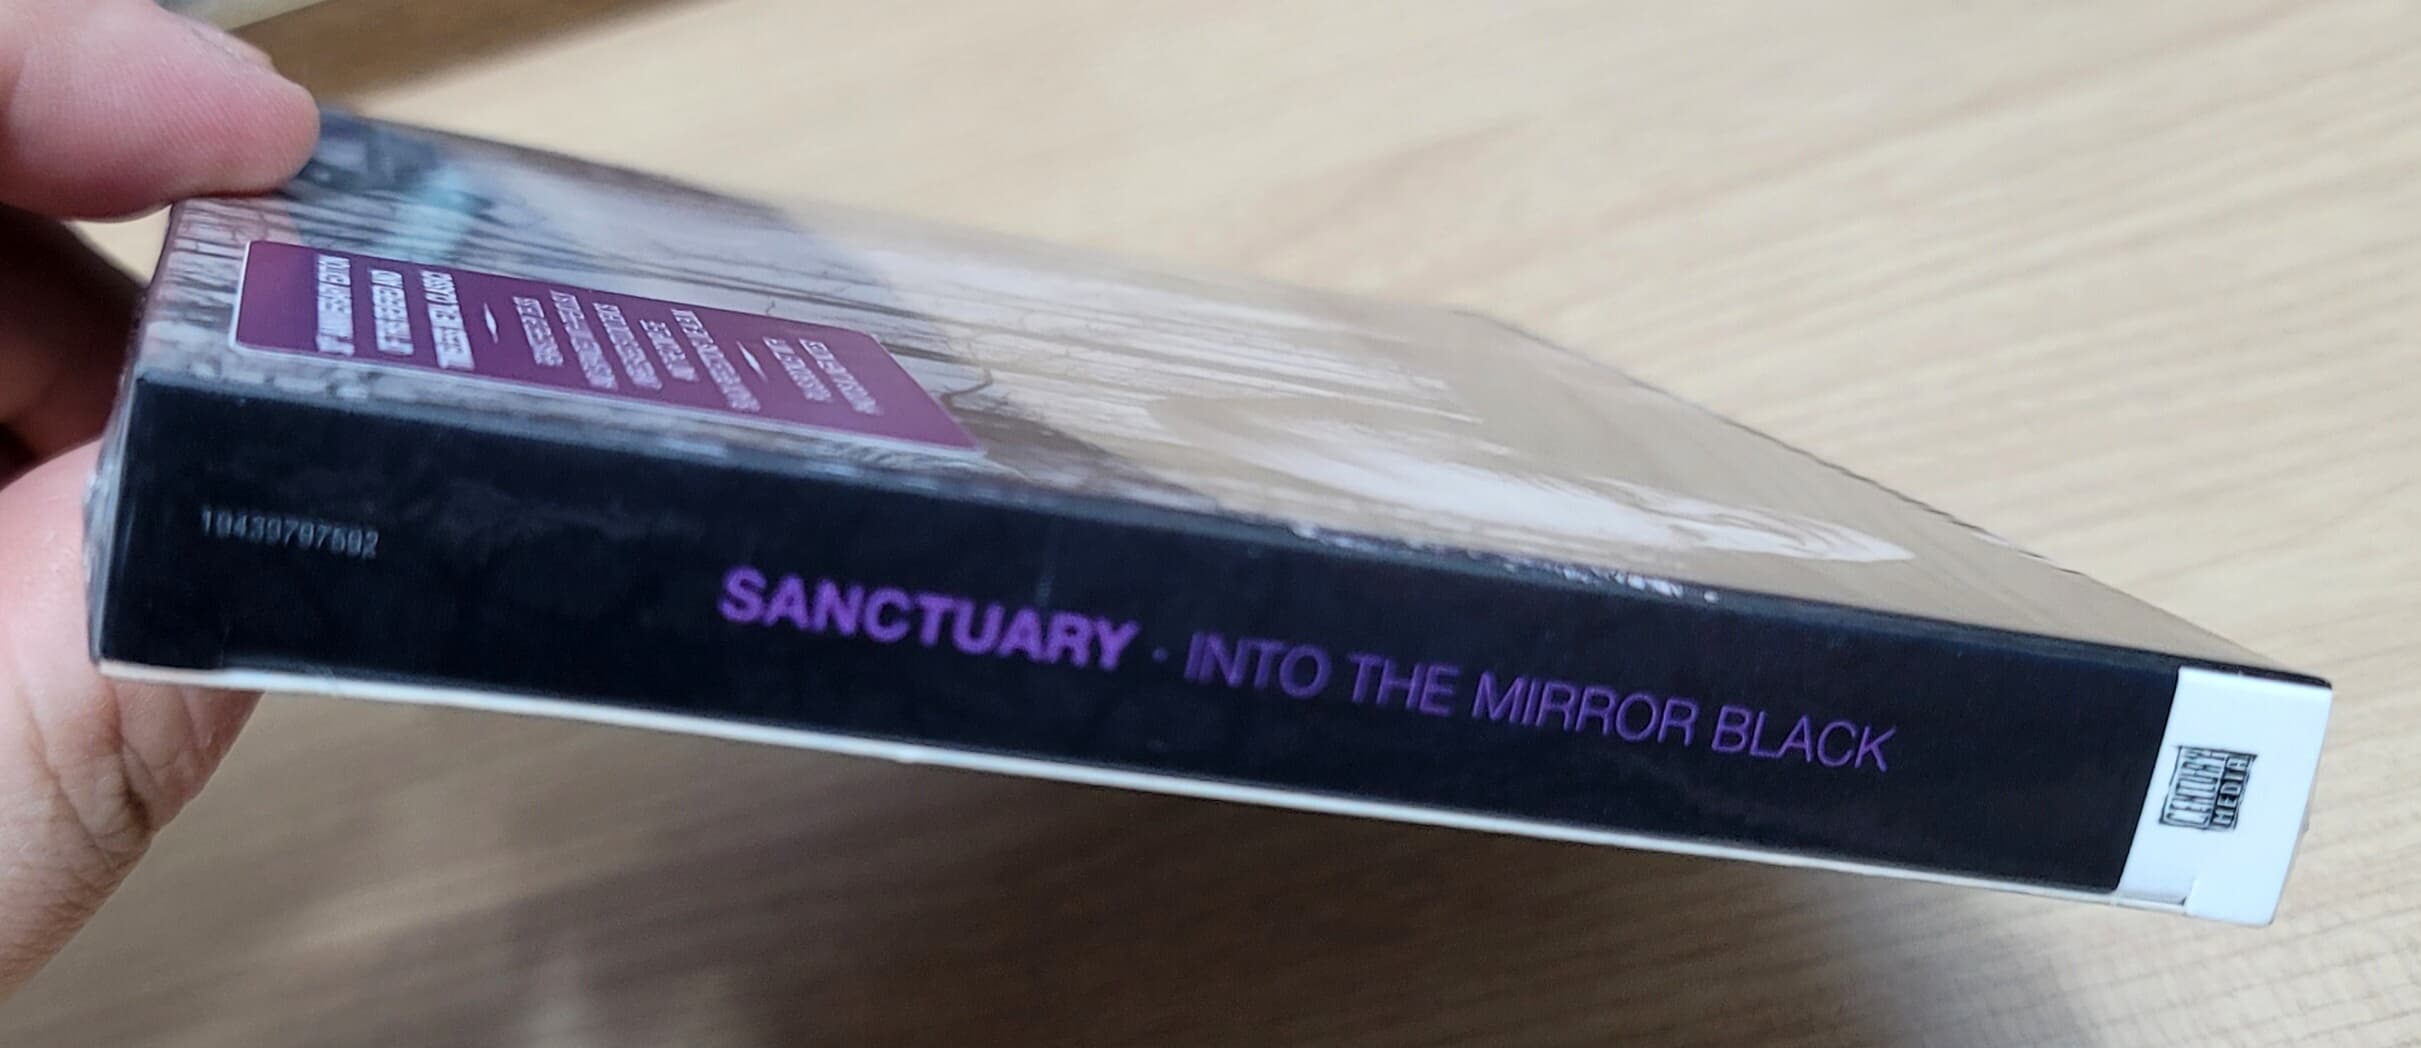 (미개봉 2CD 수입) Sanctuary - Into The Mirror Black (30th Anniversary Edition)